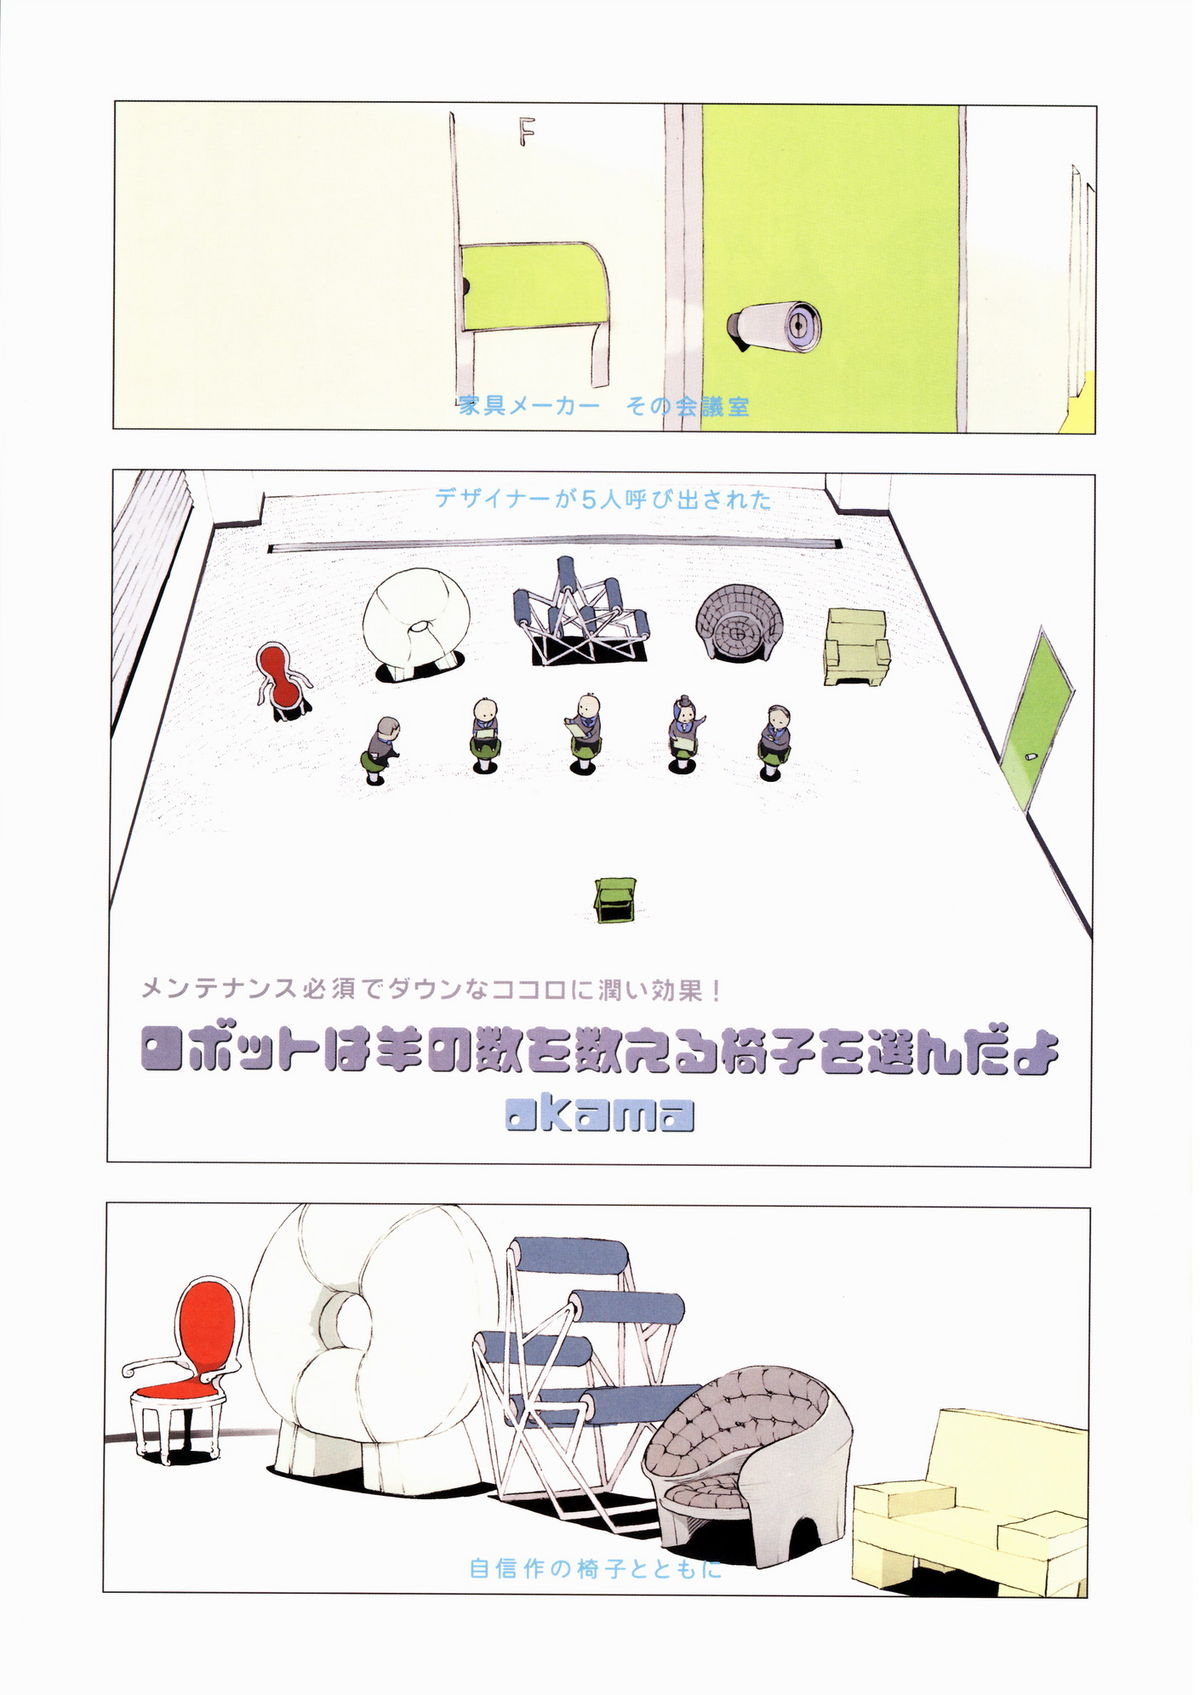 Super Color Comic Robot 10 村田蓮爾責任編集 「robot」 vol.10 (大型本)